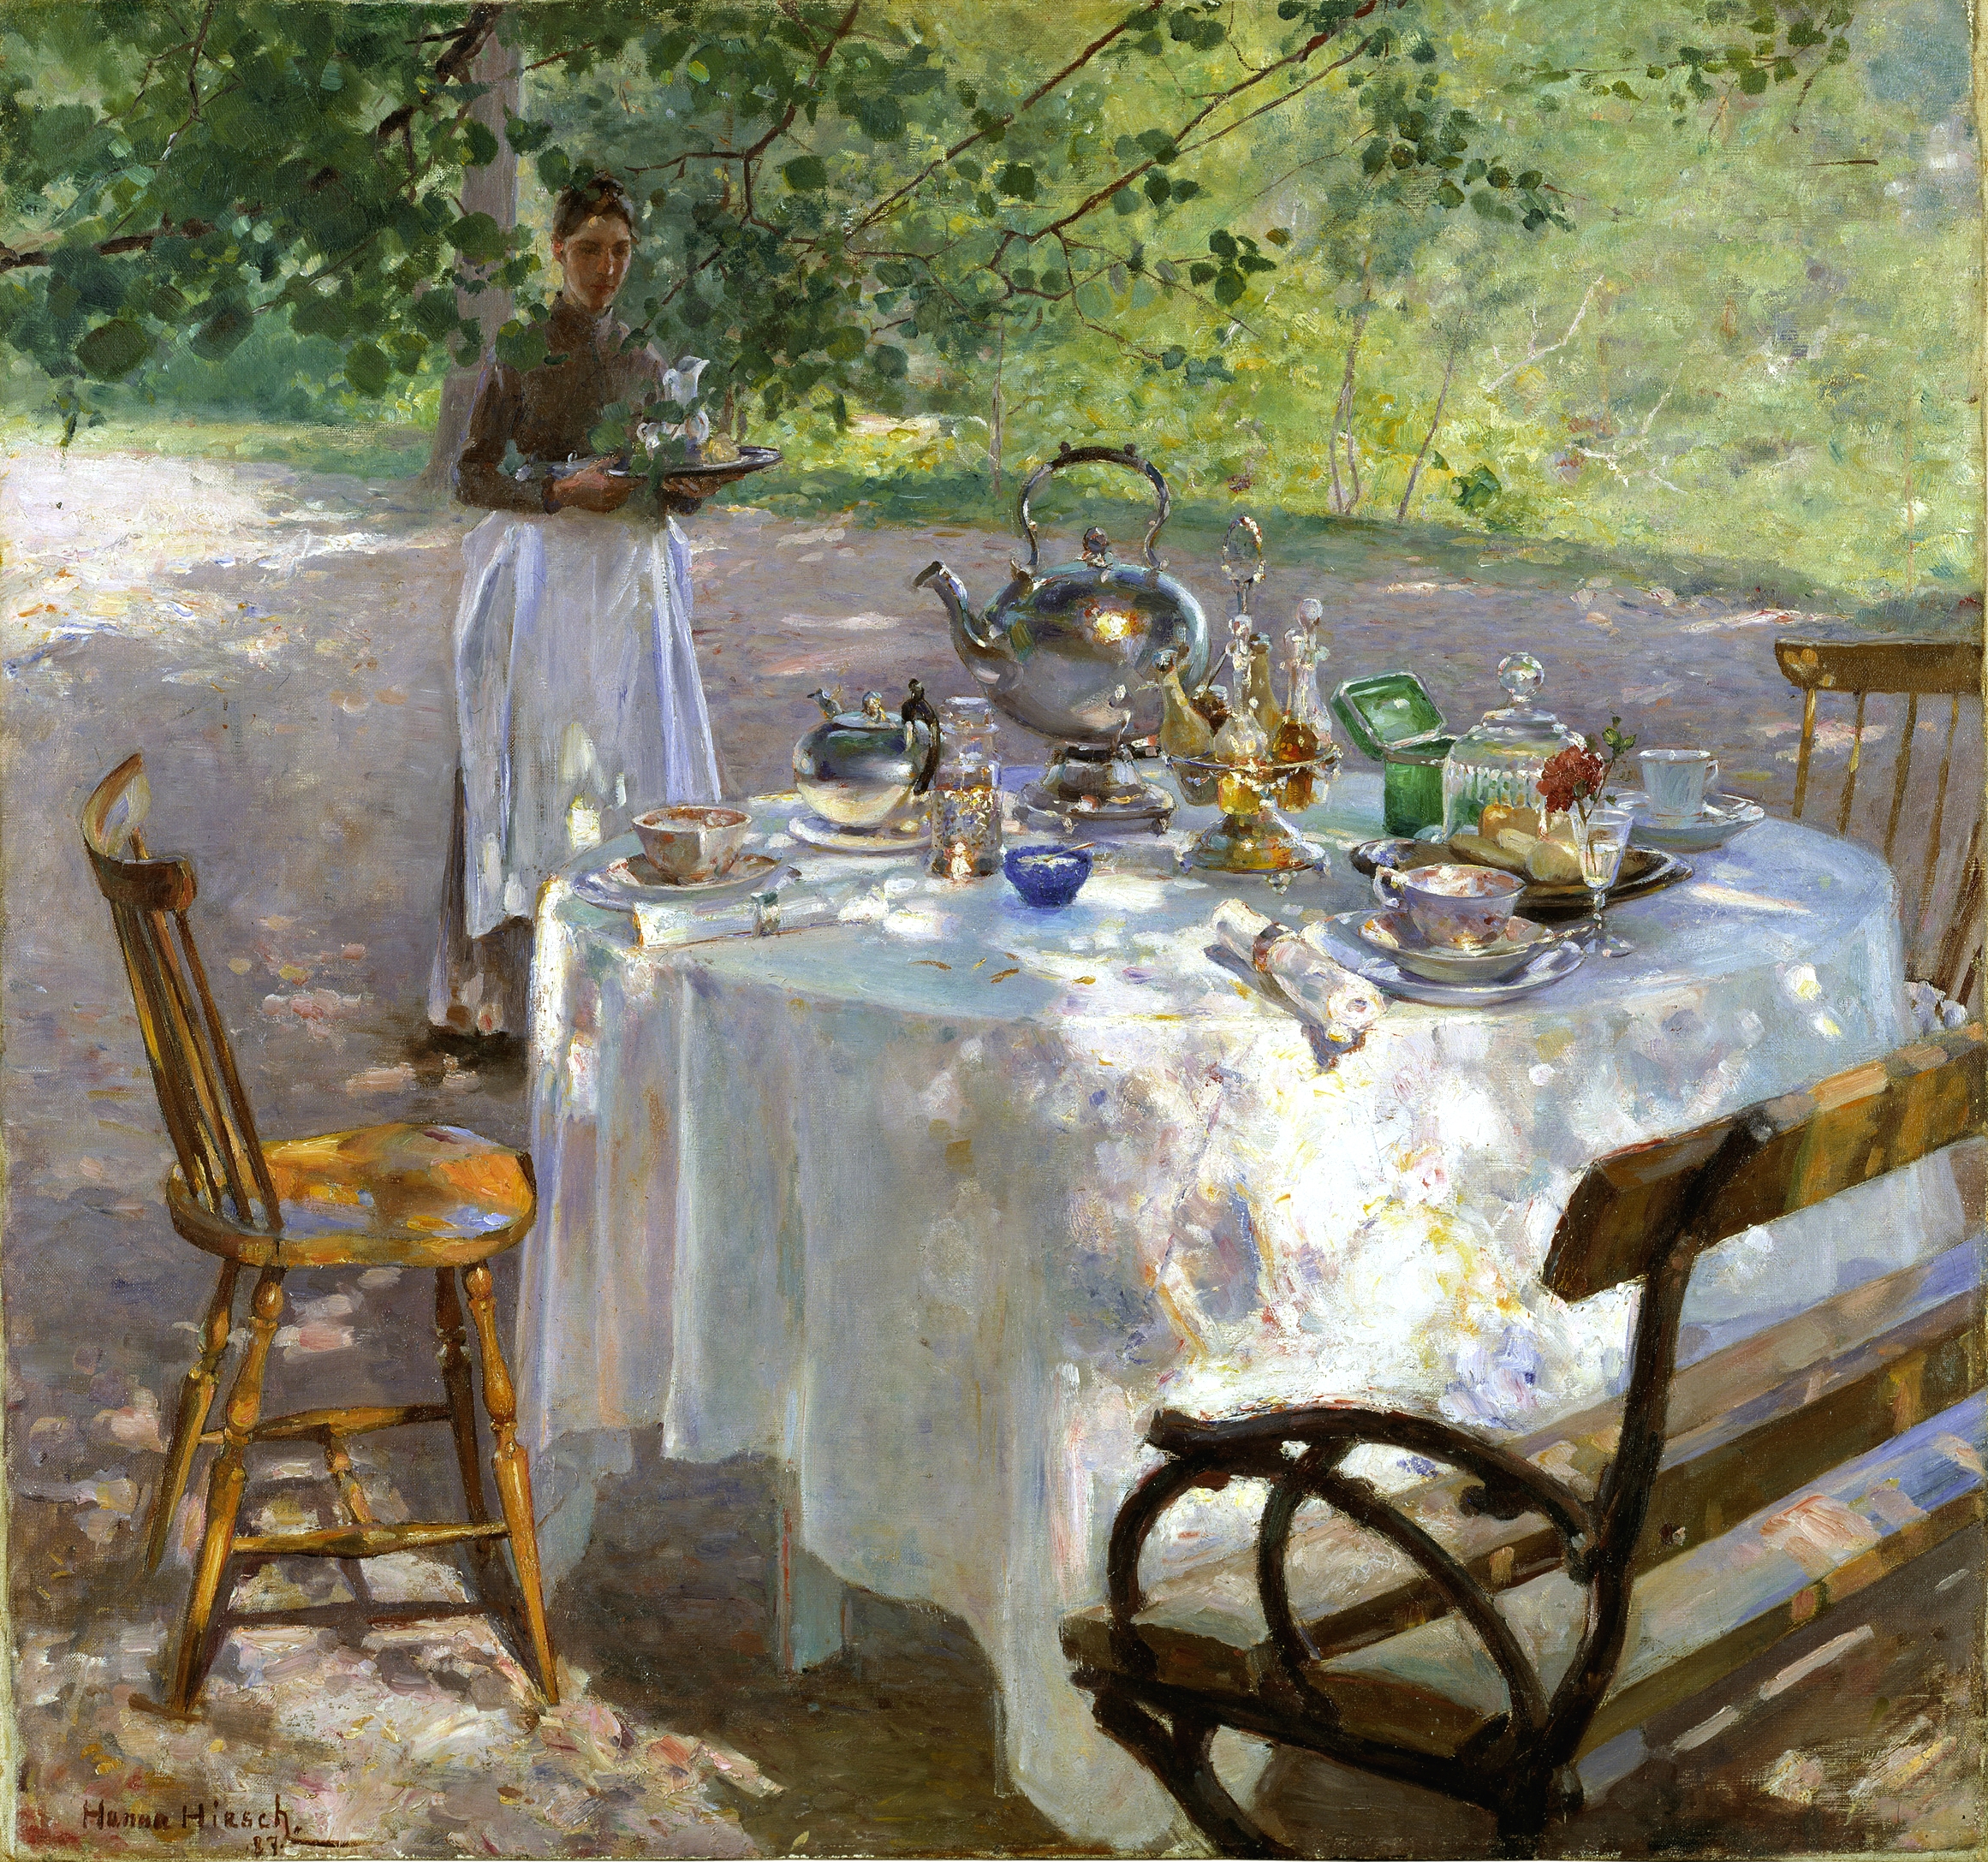 《山野早餐》 by 汉娜 保利 - 1887 - 87 x 91 厘米 